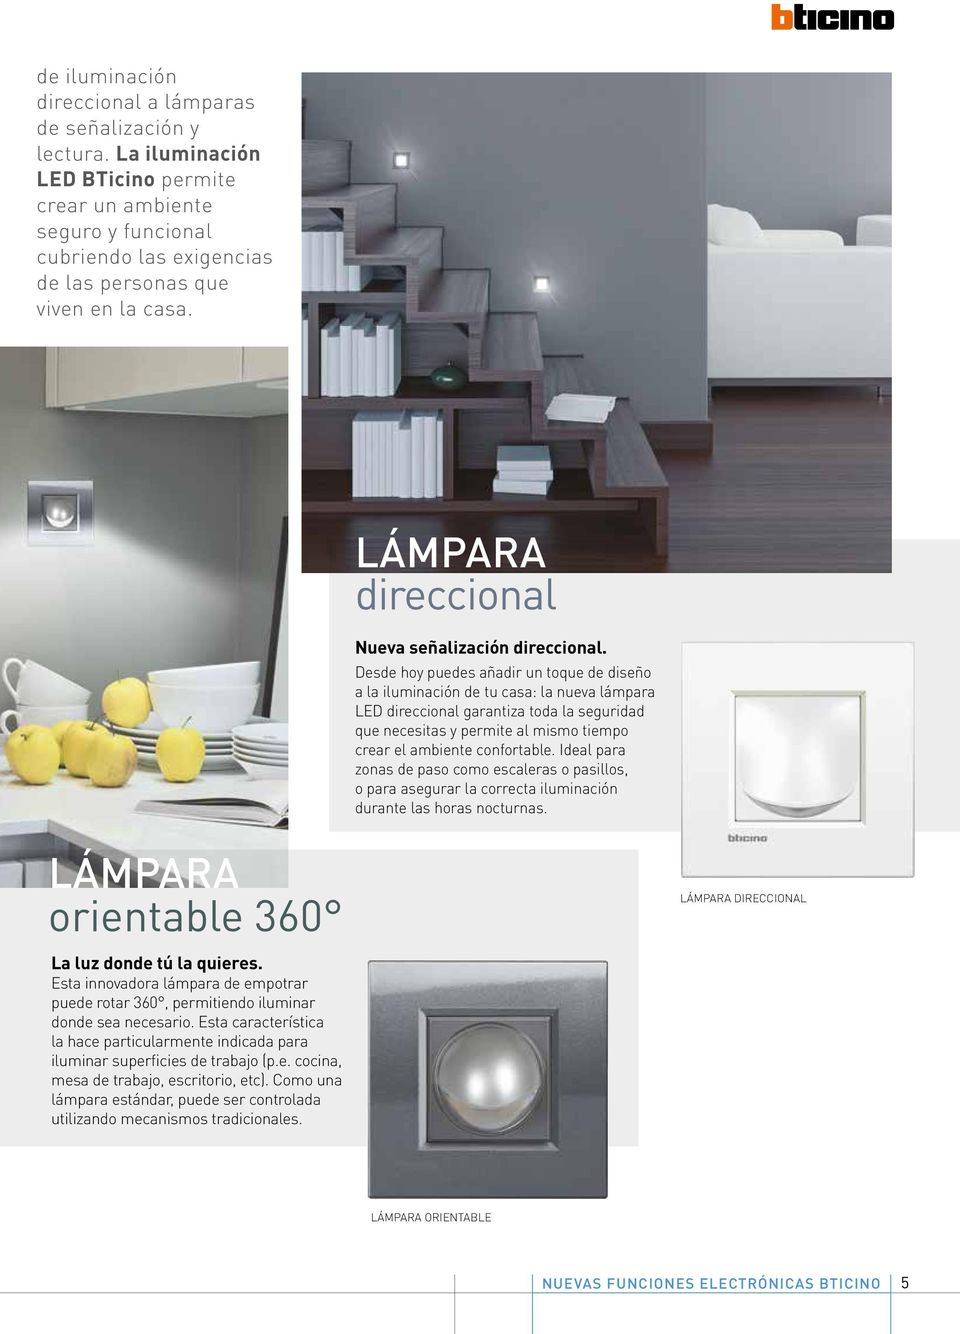 Desde hoy puedes añadir un toque de diseño a la iluminación de tu casa: la nueva lámpara LED direccional garantiza toda la seguridad que necesitas y permite al mismo tiempo crear el ambiente